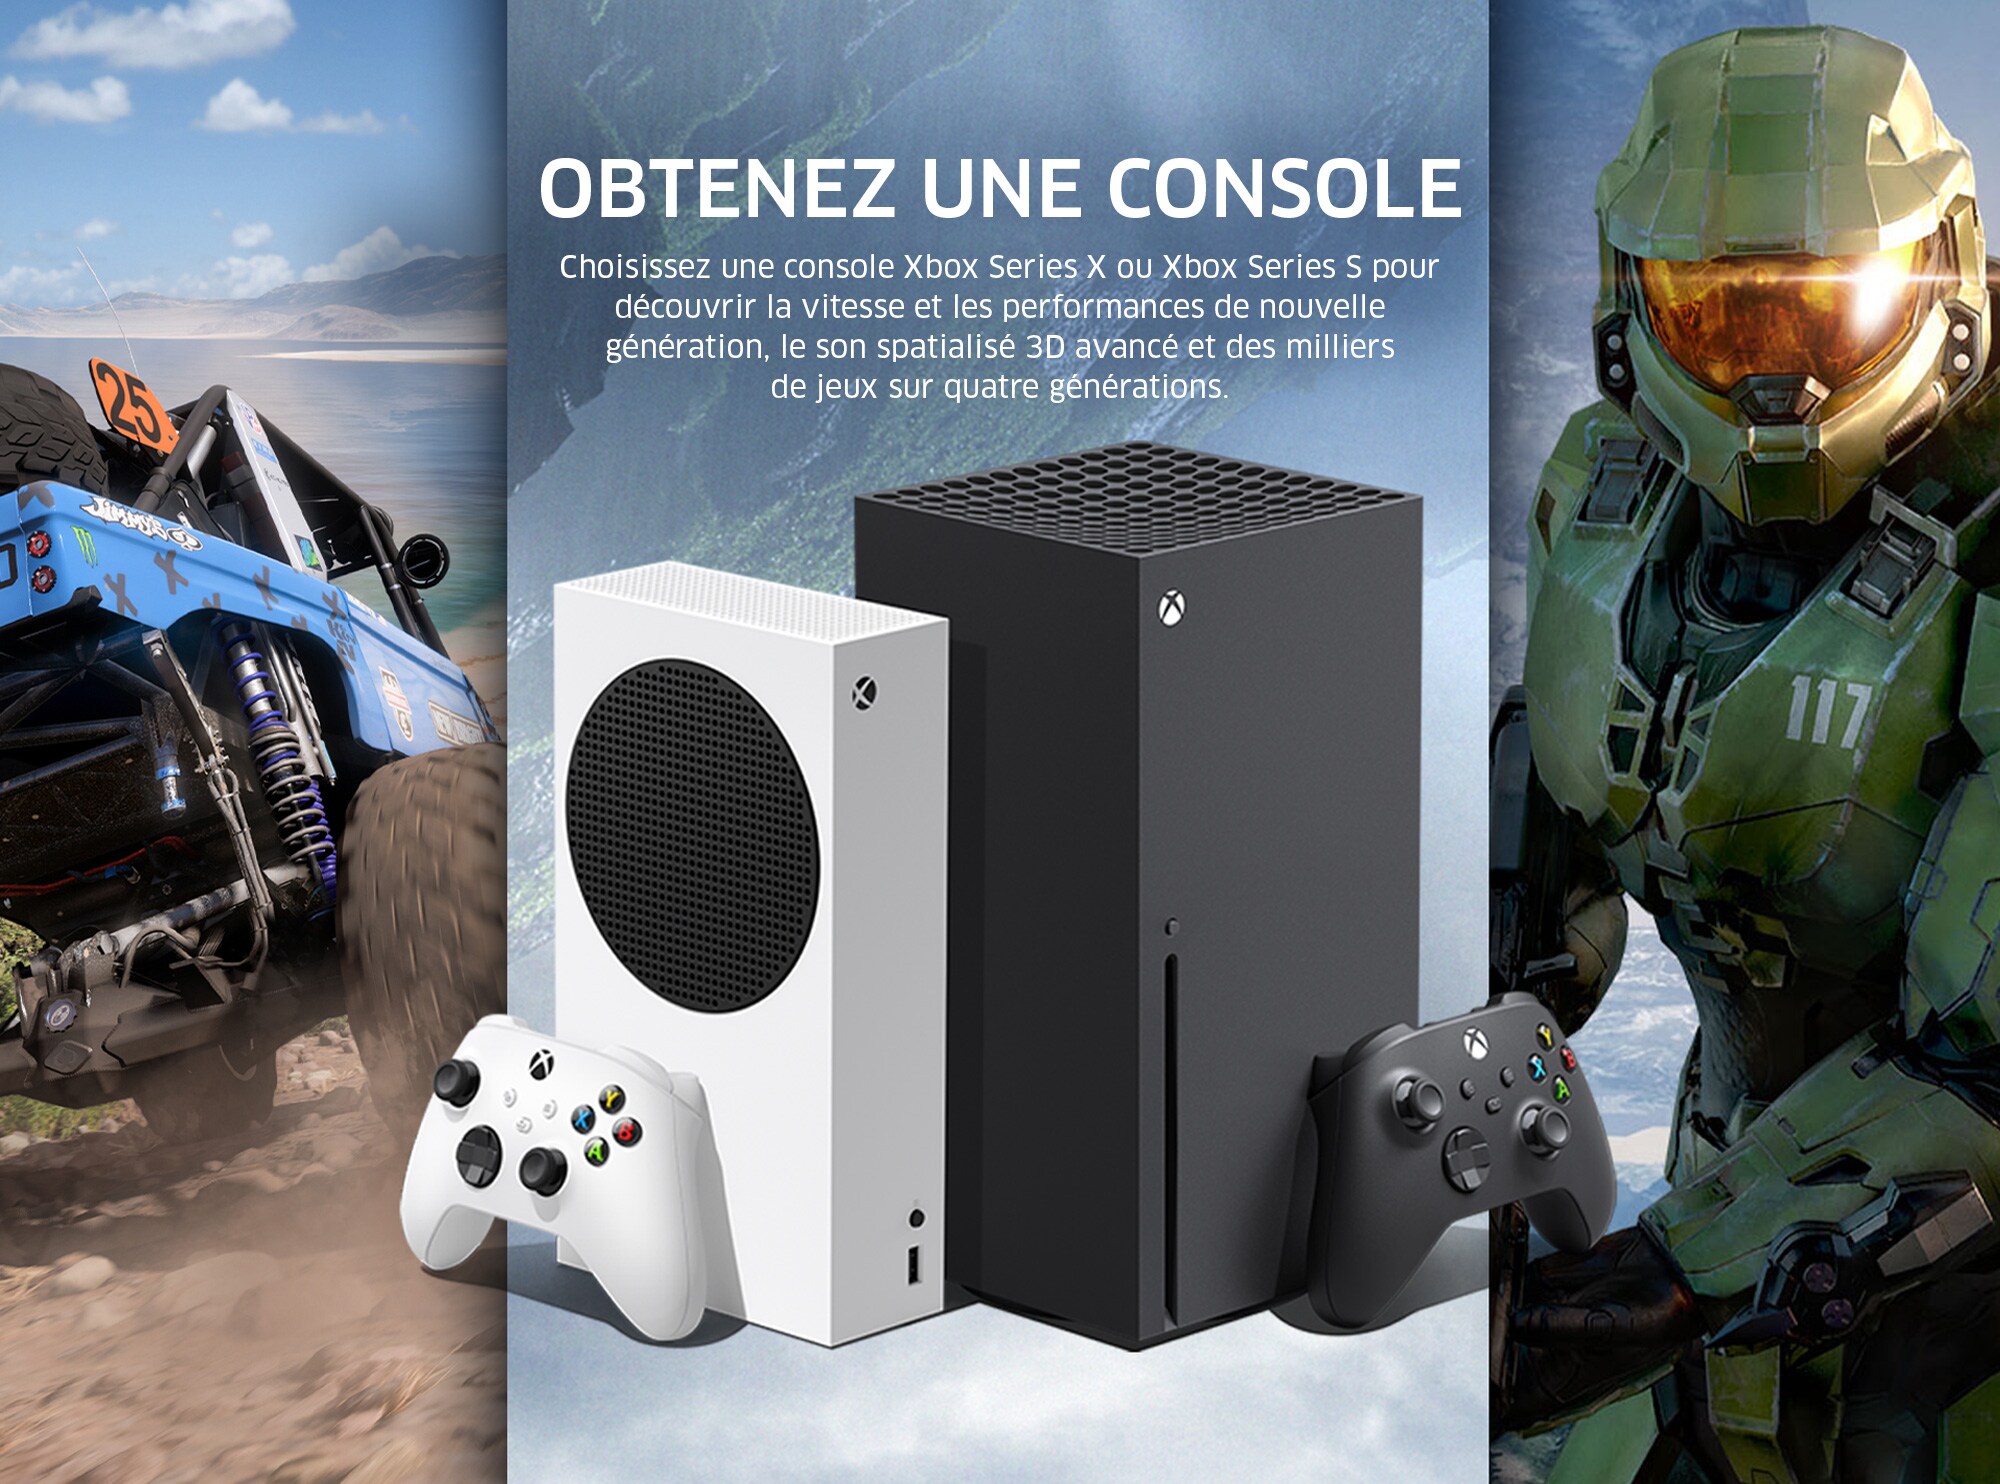 OBTENEZ UNE CONSOLE XBOX Choisissez une console Xbox Series X ou Xbox Series S pour découvrir la vitesse et les performances de nouvelle génération, le son spatialisé 3D avancé et des milliers de jeux sur quatre générations.